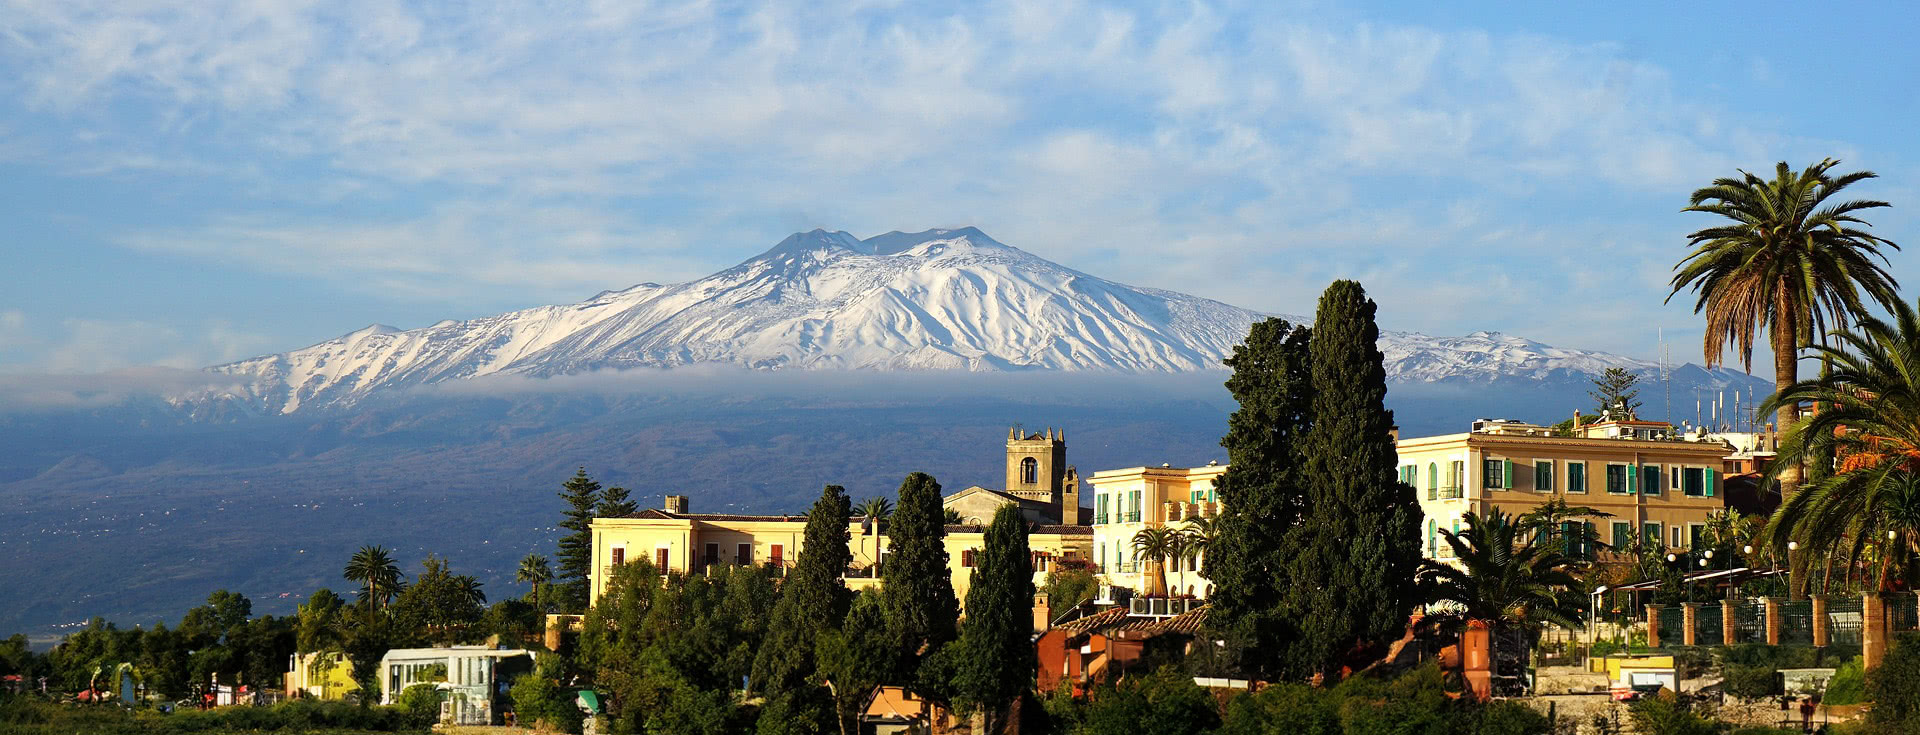 Blick auf dem Etna von der Stadt Catania